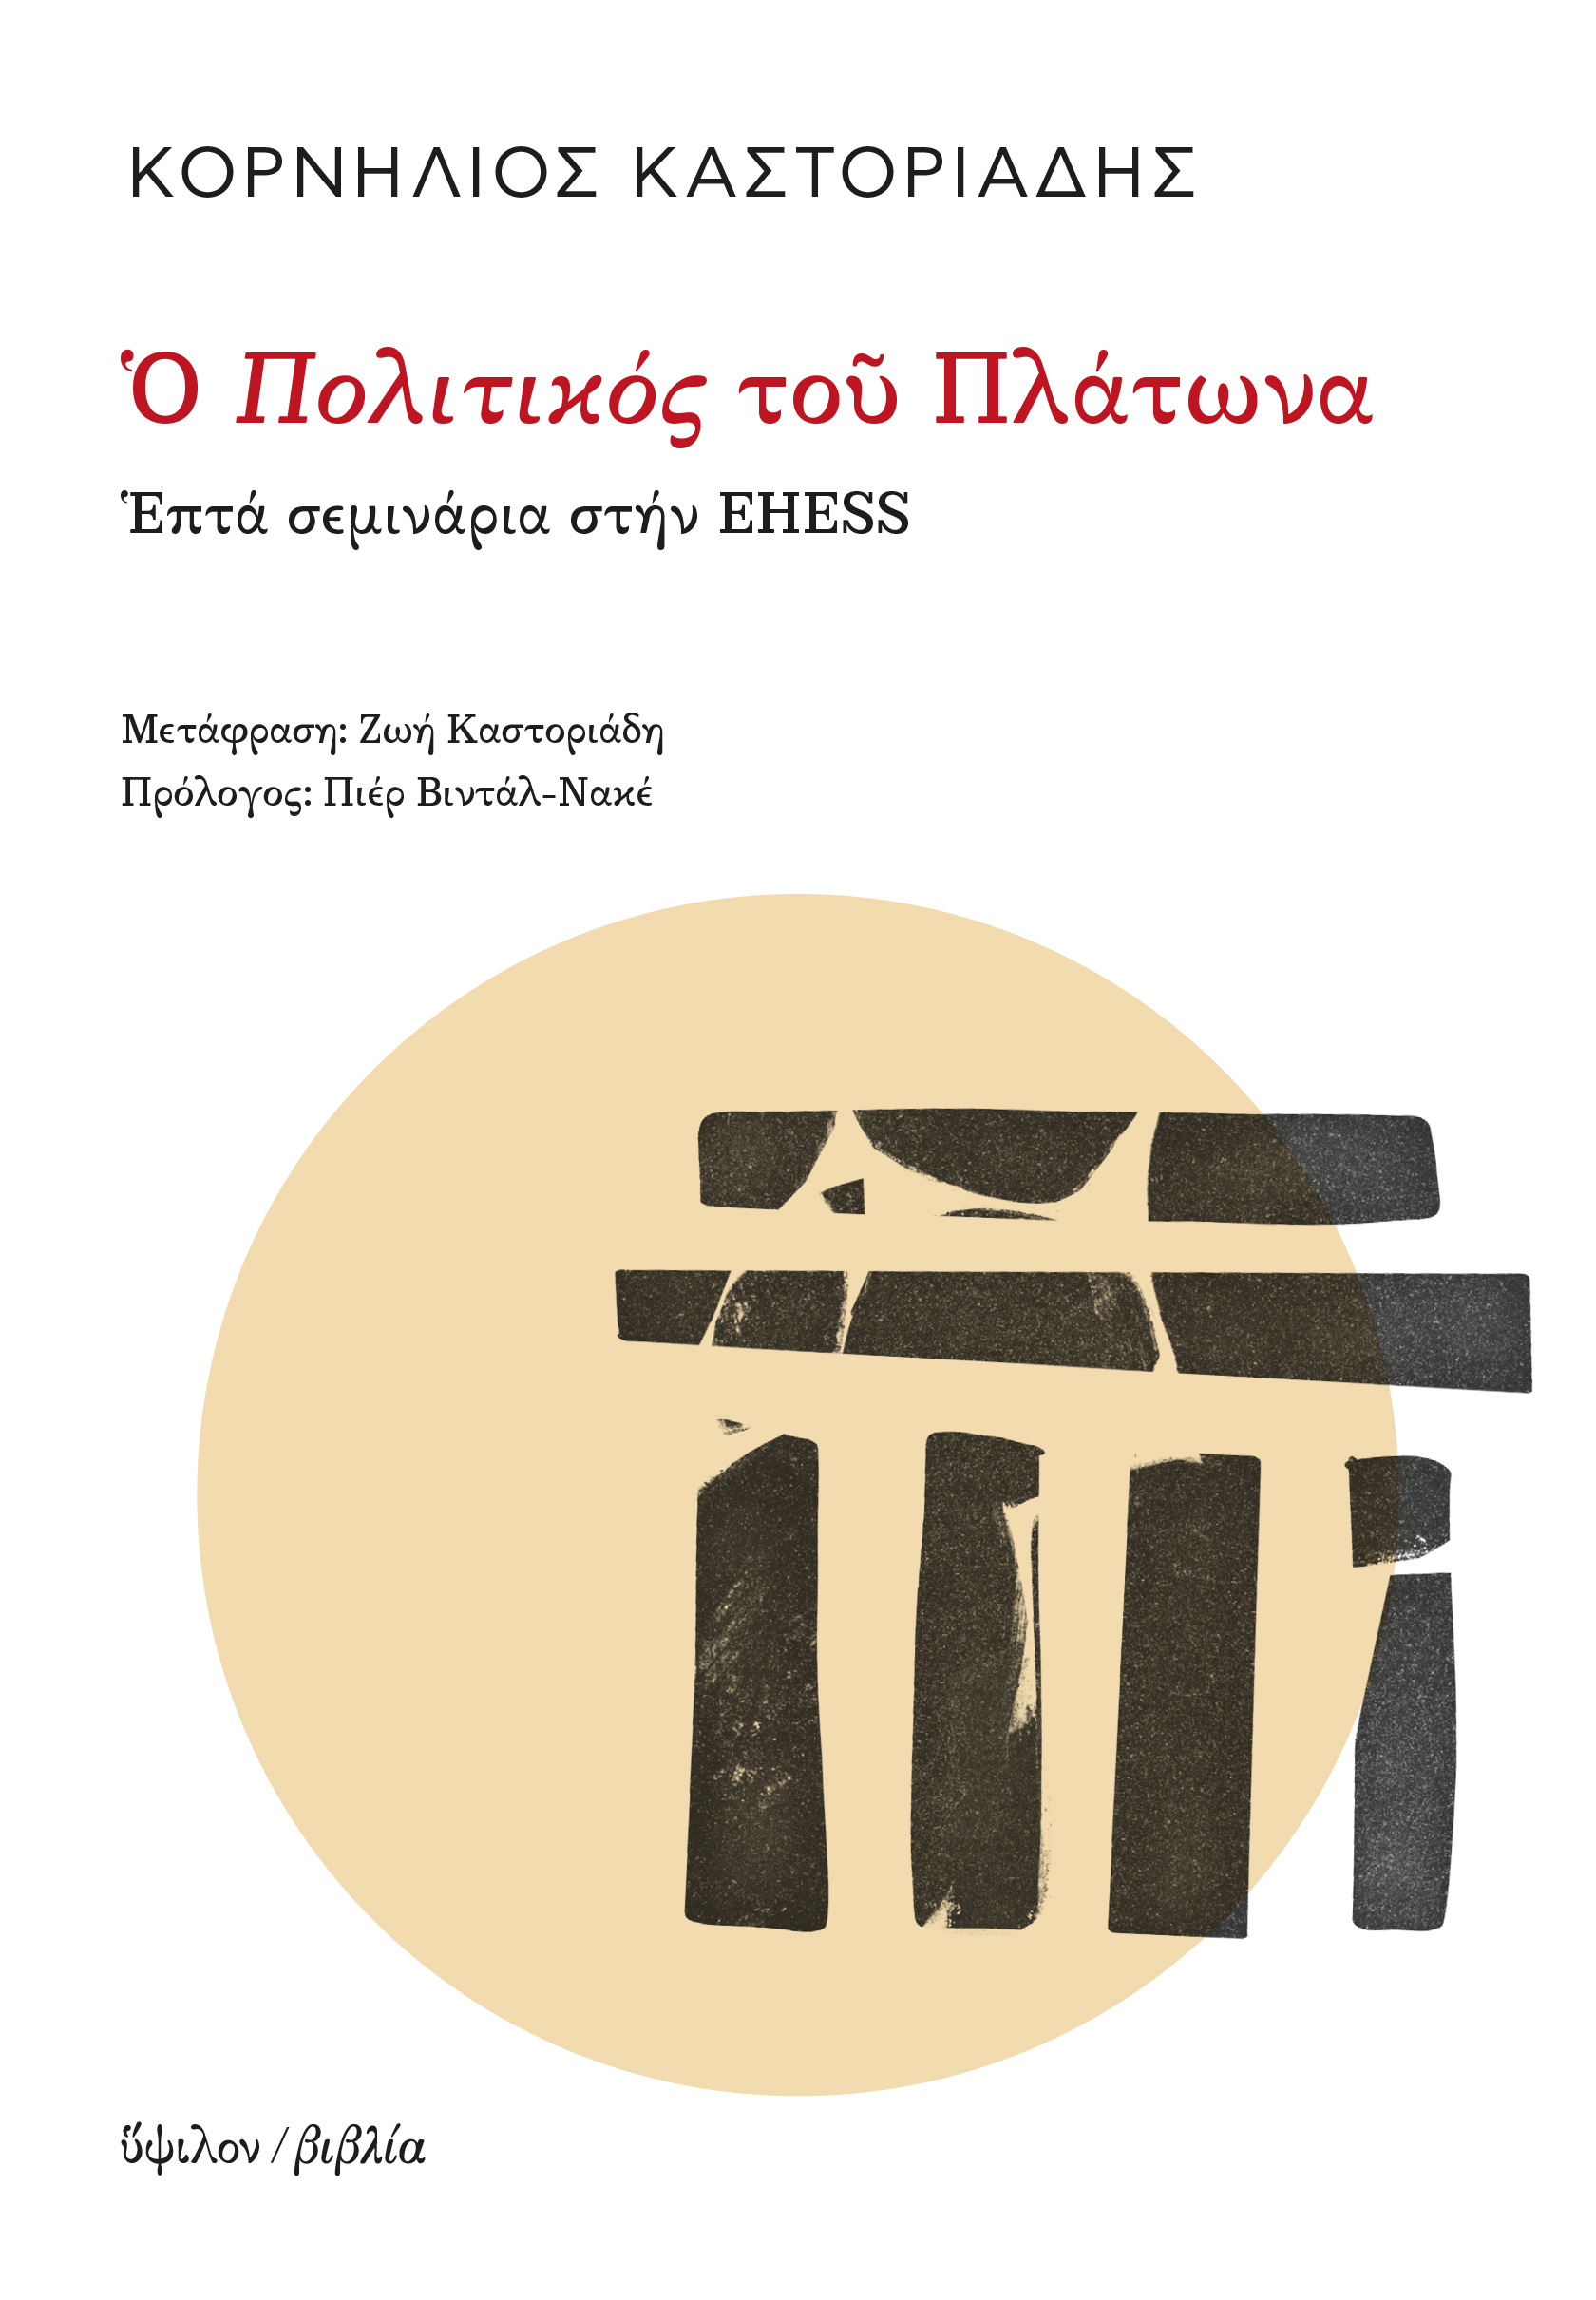 2020, Καστοριάδη, Ζωή (Kastoriadi, Zoi ?), Ο Πολιτικός του Πλάτωνα, Επτά σεμινάρια στην EHESS, Καστοριάδης, Κορνήλιος, 1922-1997, Ύψιλον